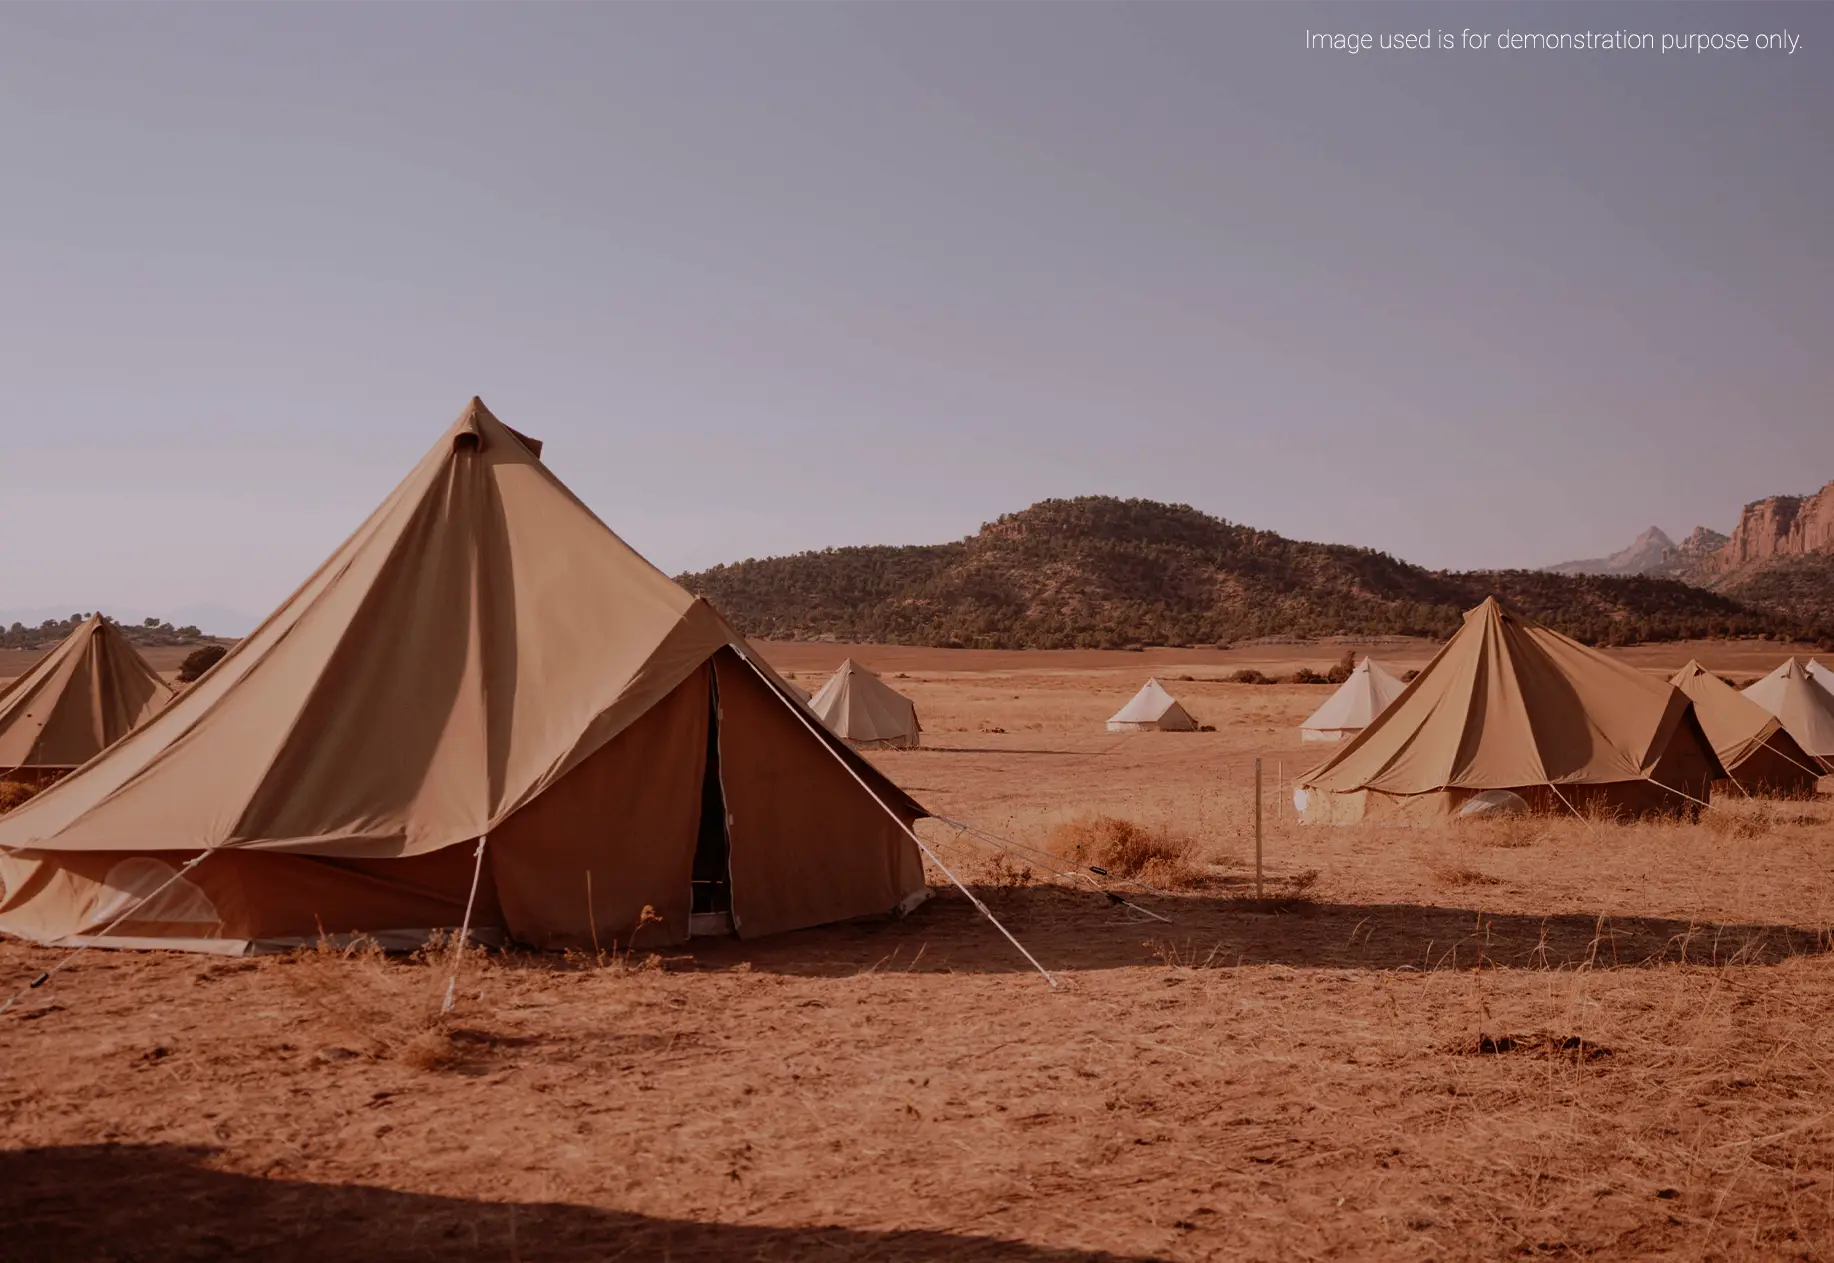 Rajasthan Desert Safari Camp